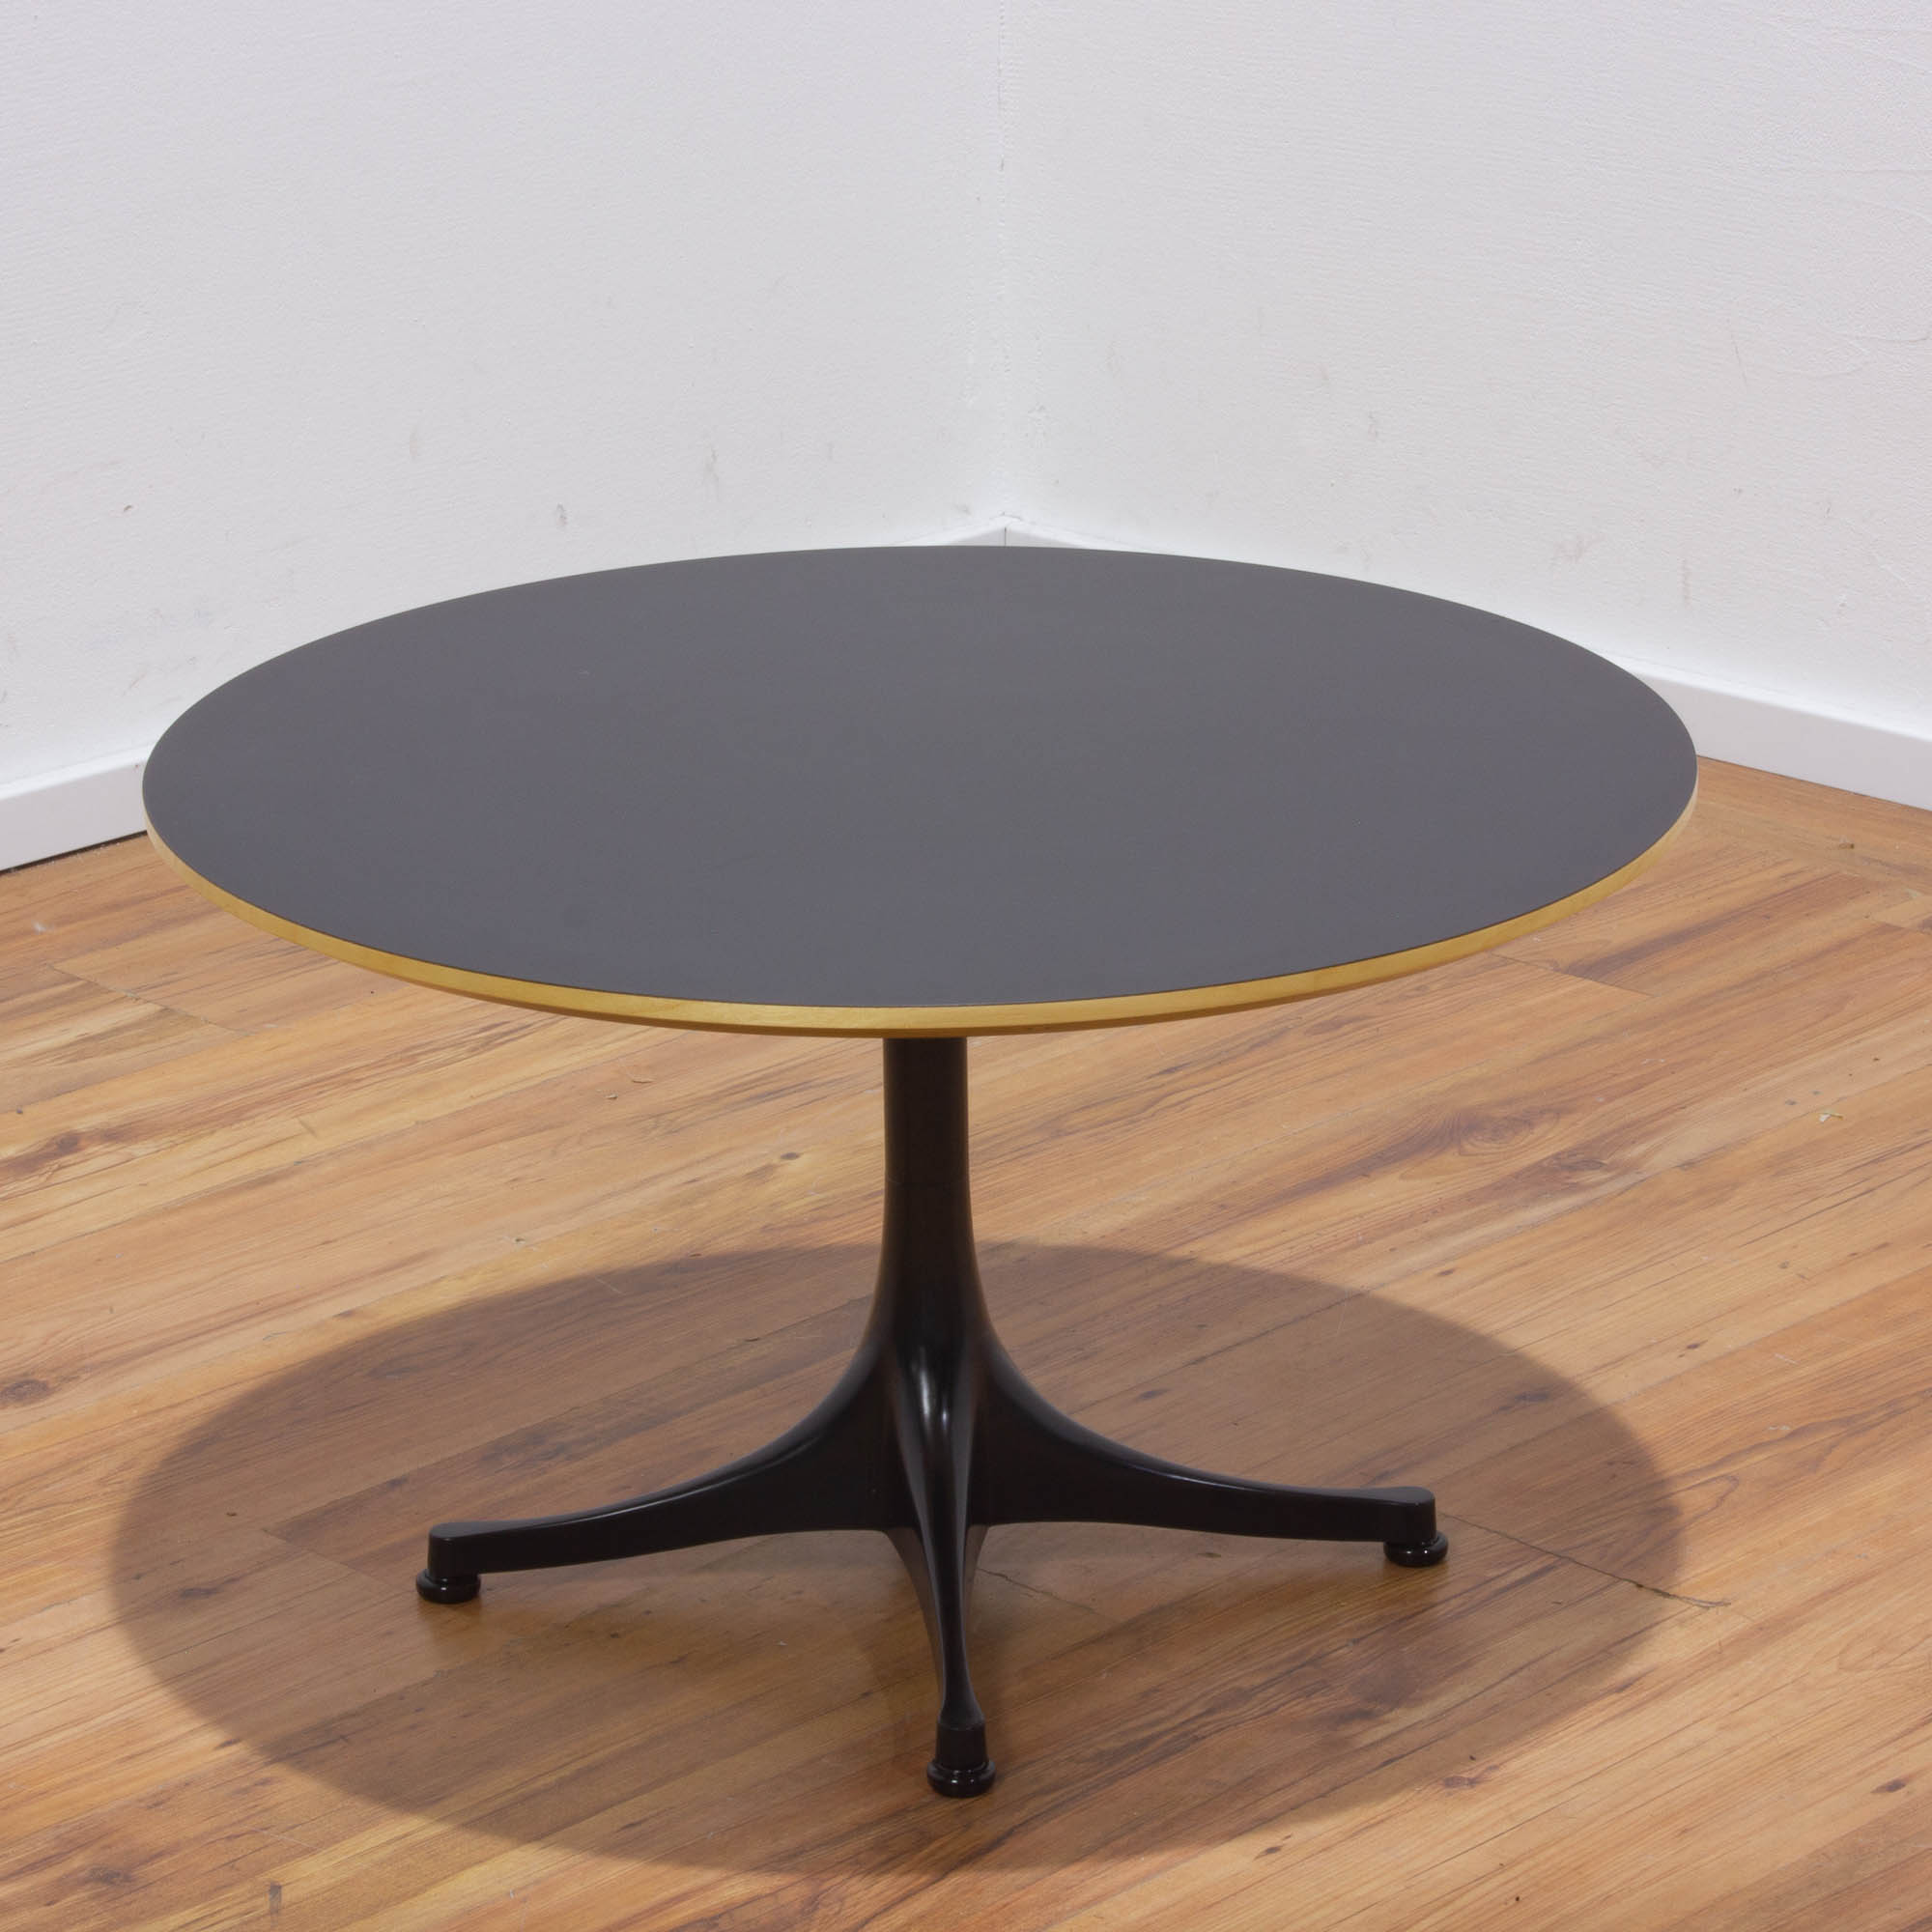 Vitra Nelson Coffe Table Beistelltisch - Platte schwarz Ø70 cm - 4-Sternfuß schwarz